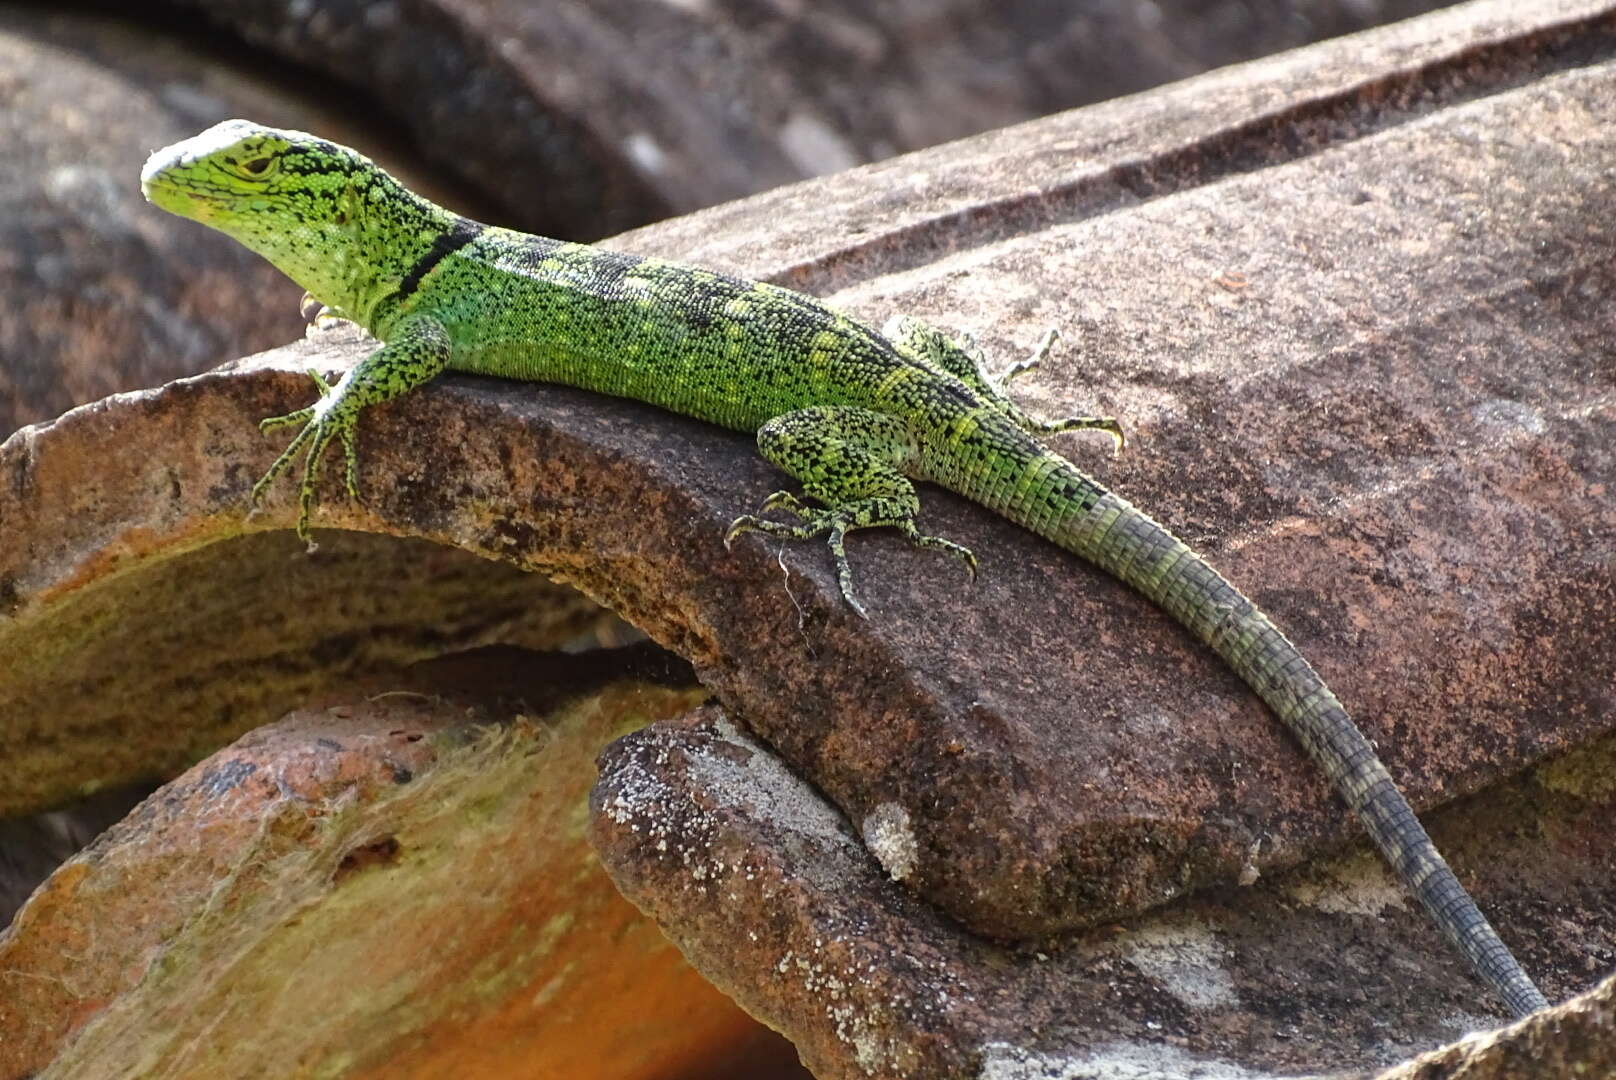 Image of Patterned Whorltail Iguana